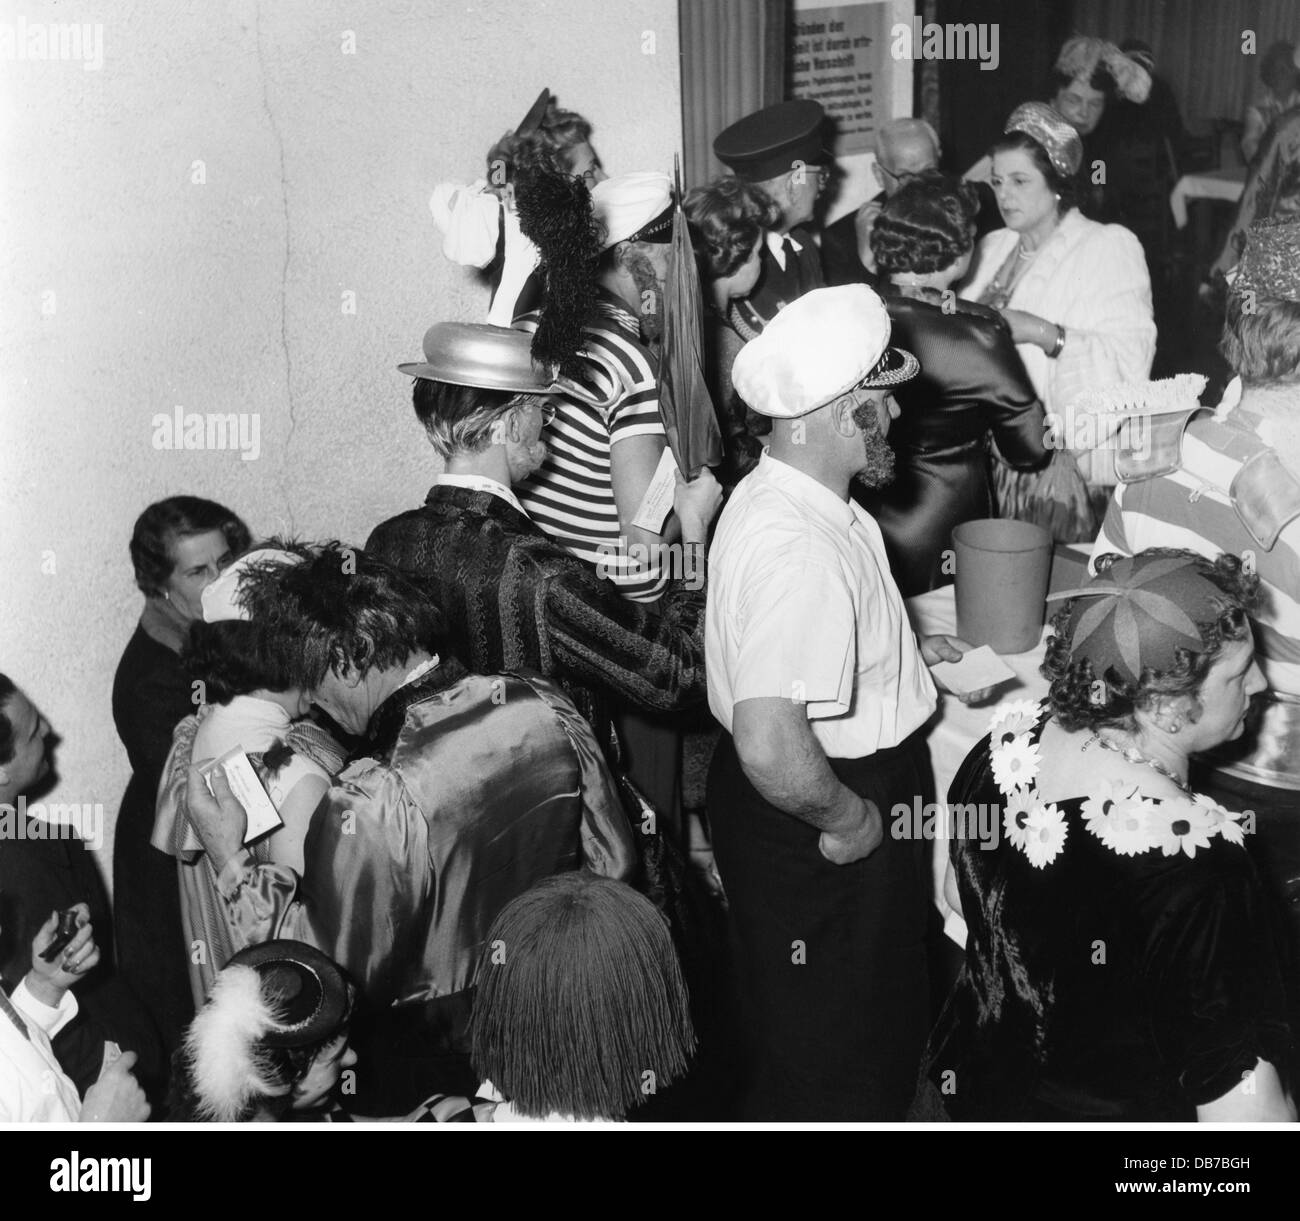 Festlichkeiten, Karneval, Festtag des 'Deutschen Ritter', kostümierte Gäste im Foyer, Löwenbräukeller, München, 1957, Zusatz-Rechte-Clearenzen-nicht vorhanden Stockfoto